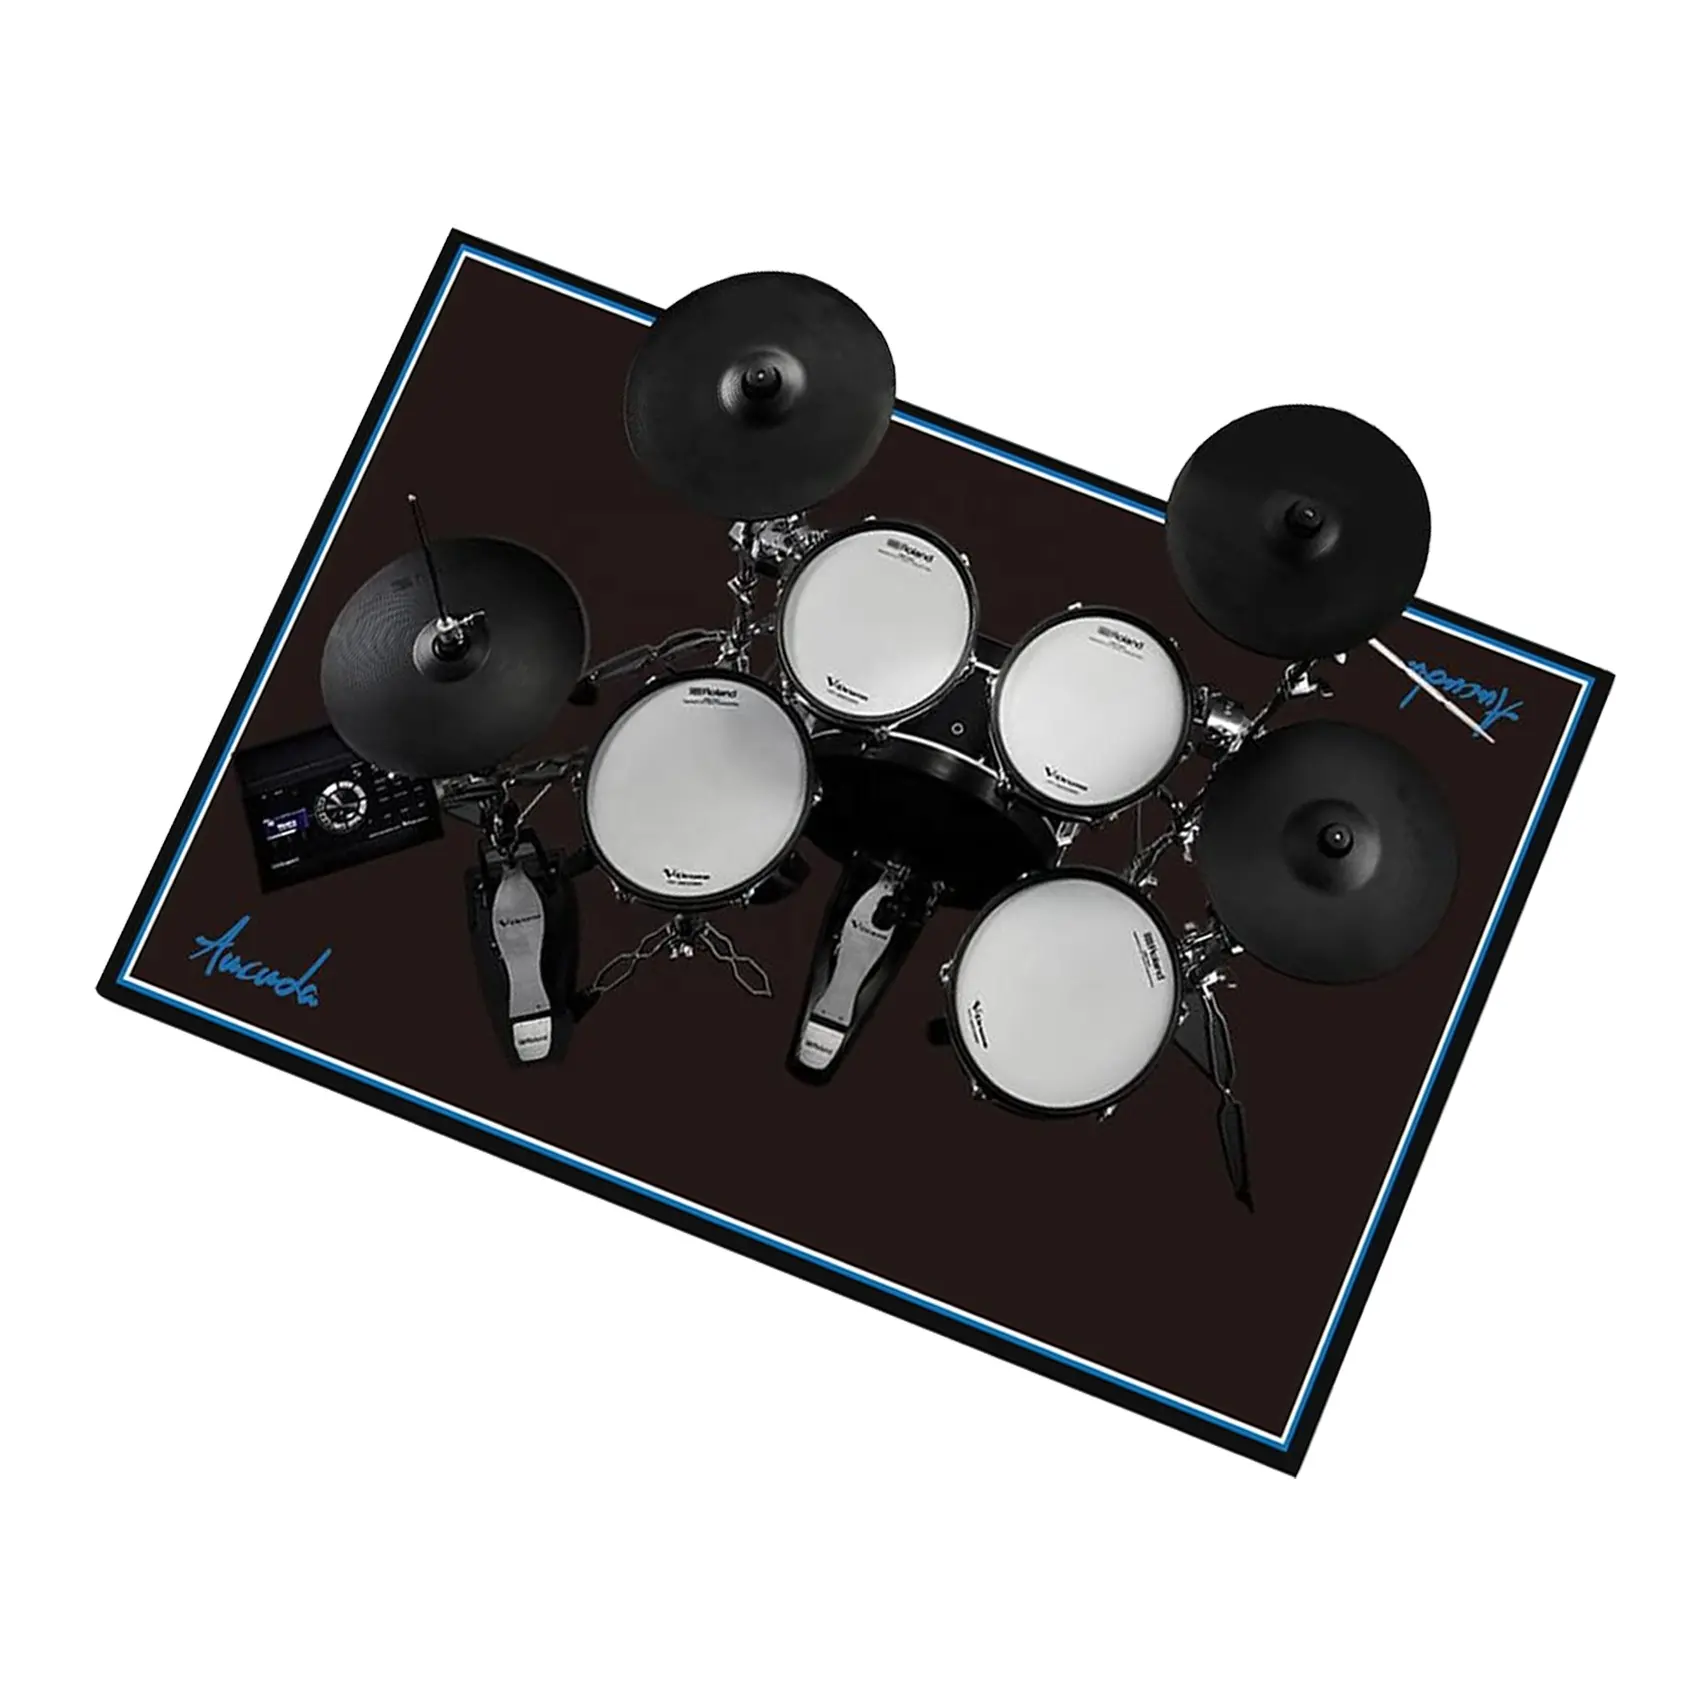 Нескользящий звуконепроницаемый ковер Профессиональный прямоугольный электронный джазовый барабанный набор коврики для музыкального инструмента